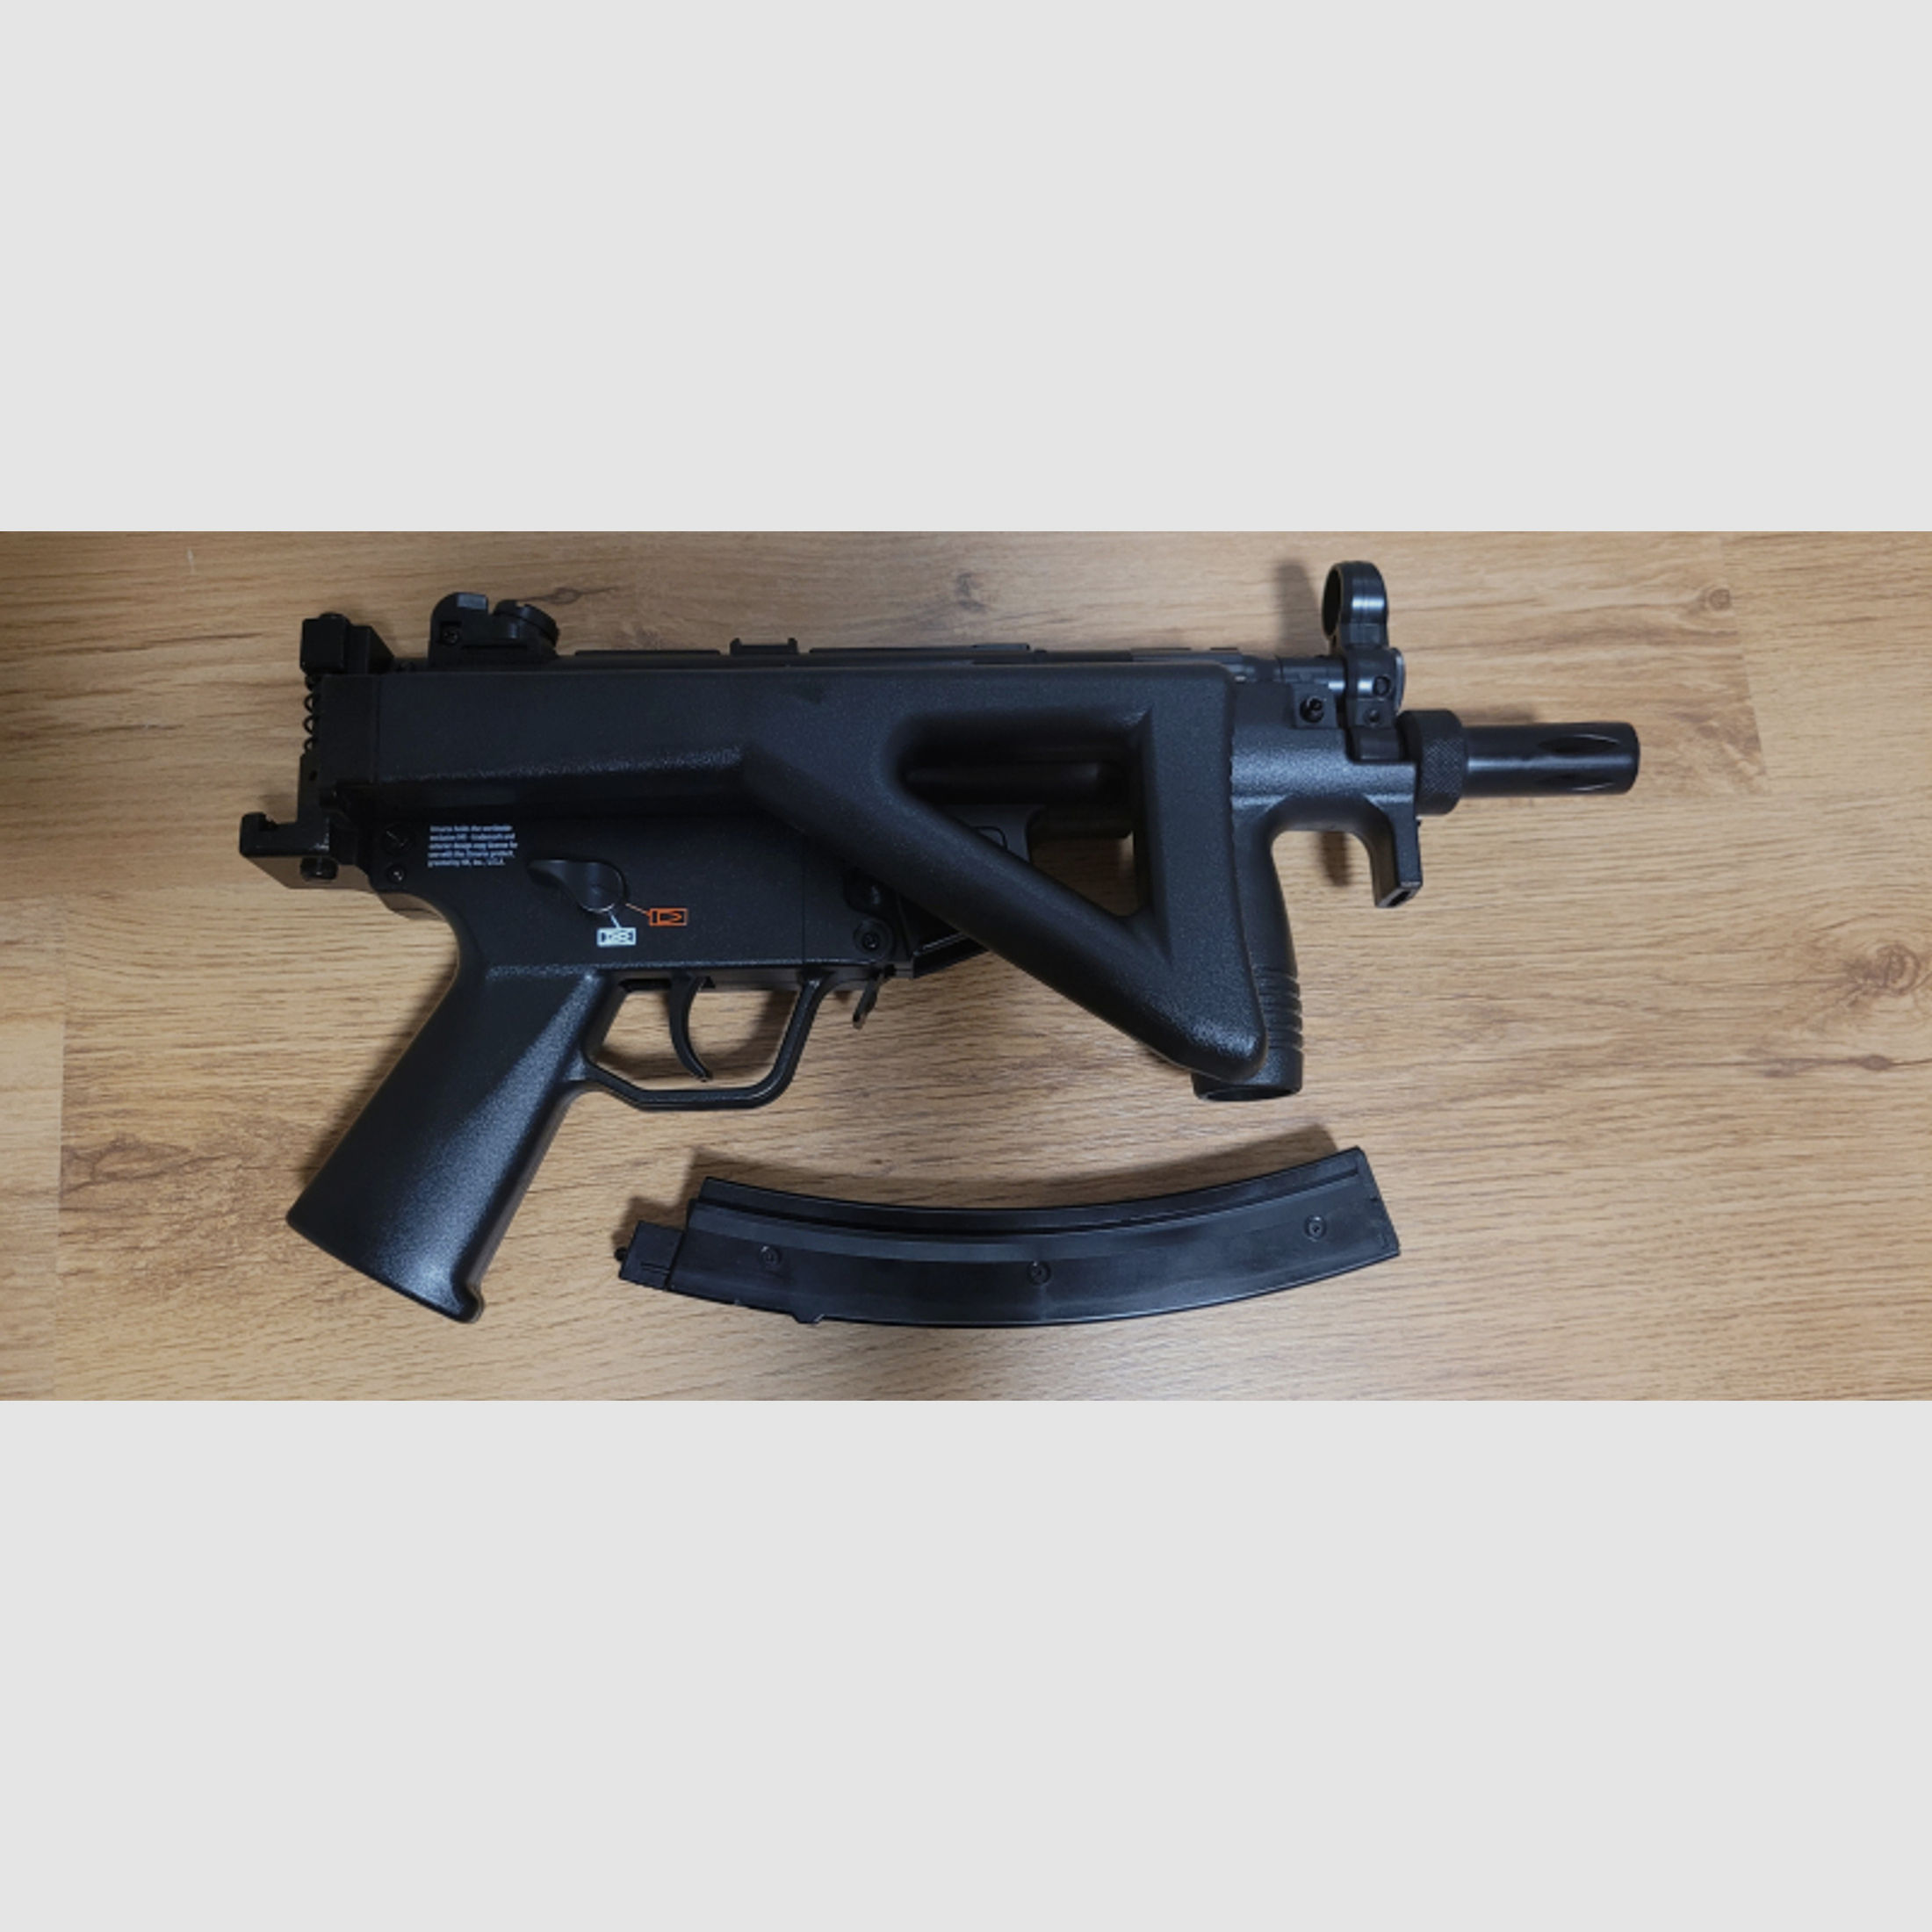 Co2 MP5 K-PDW Heckler & Koch